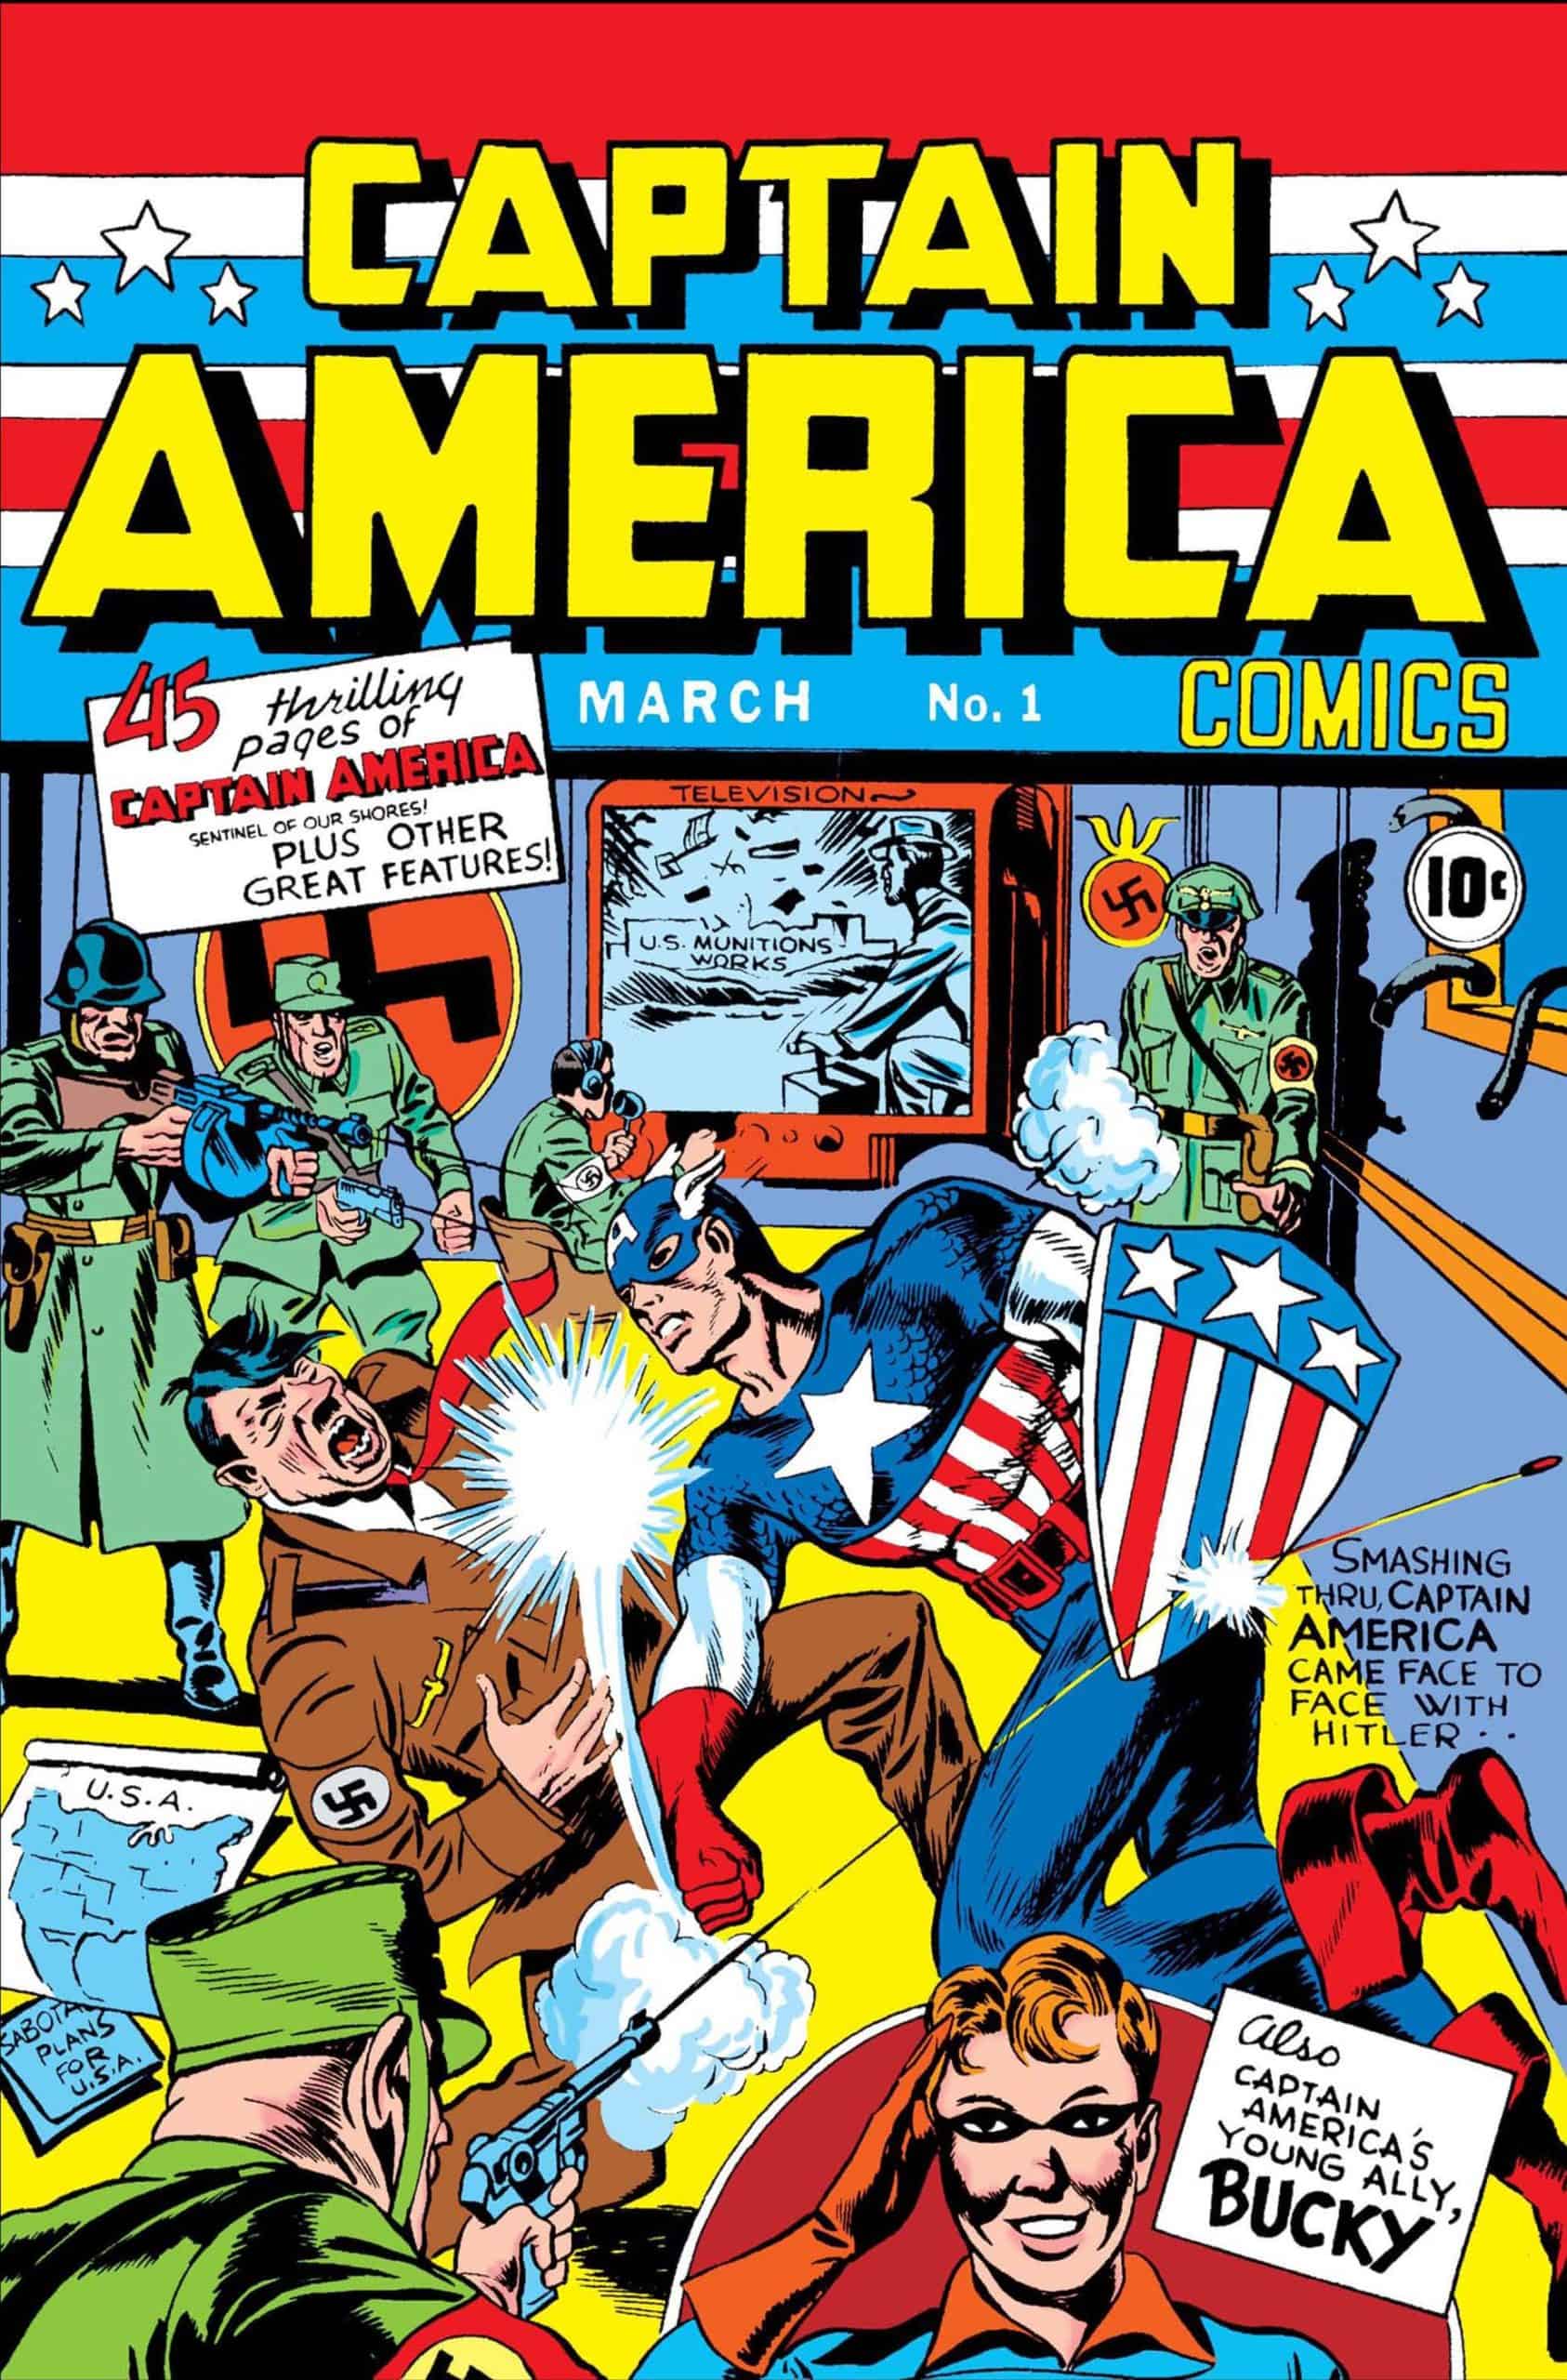 Captain America Comics No. 1